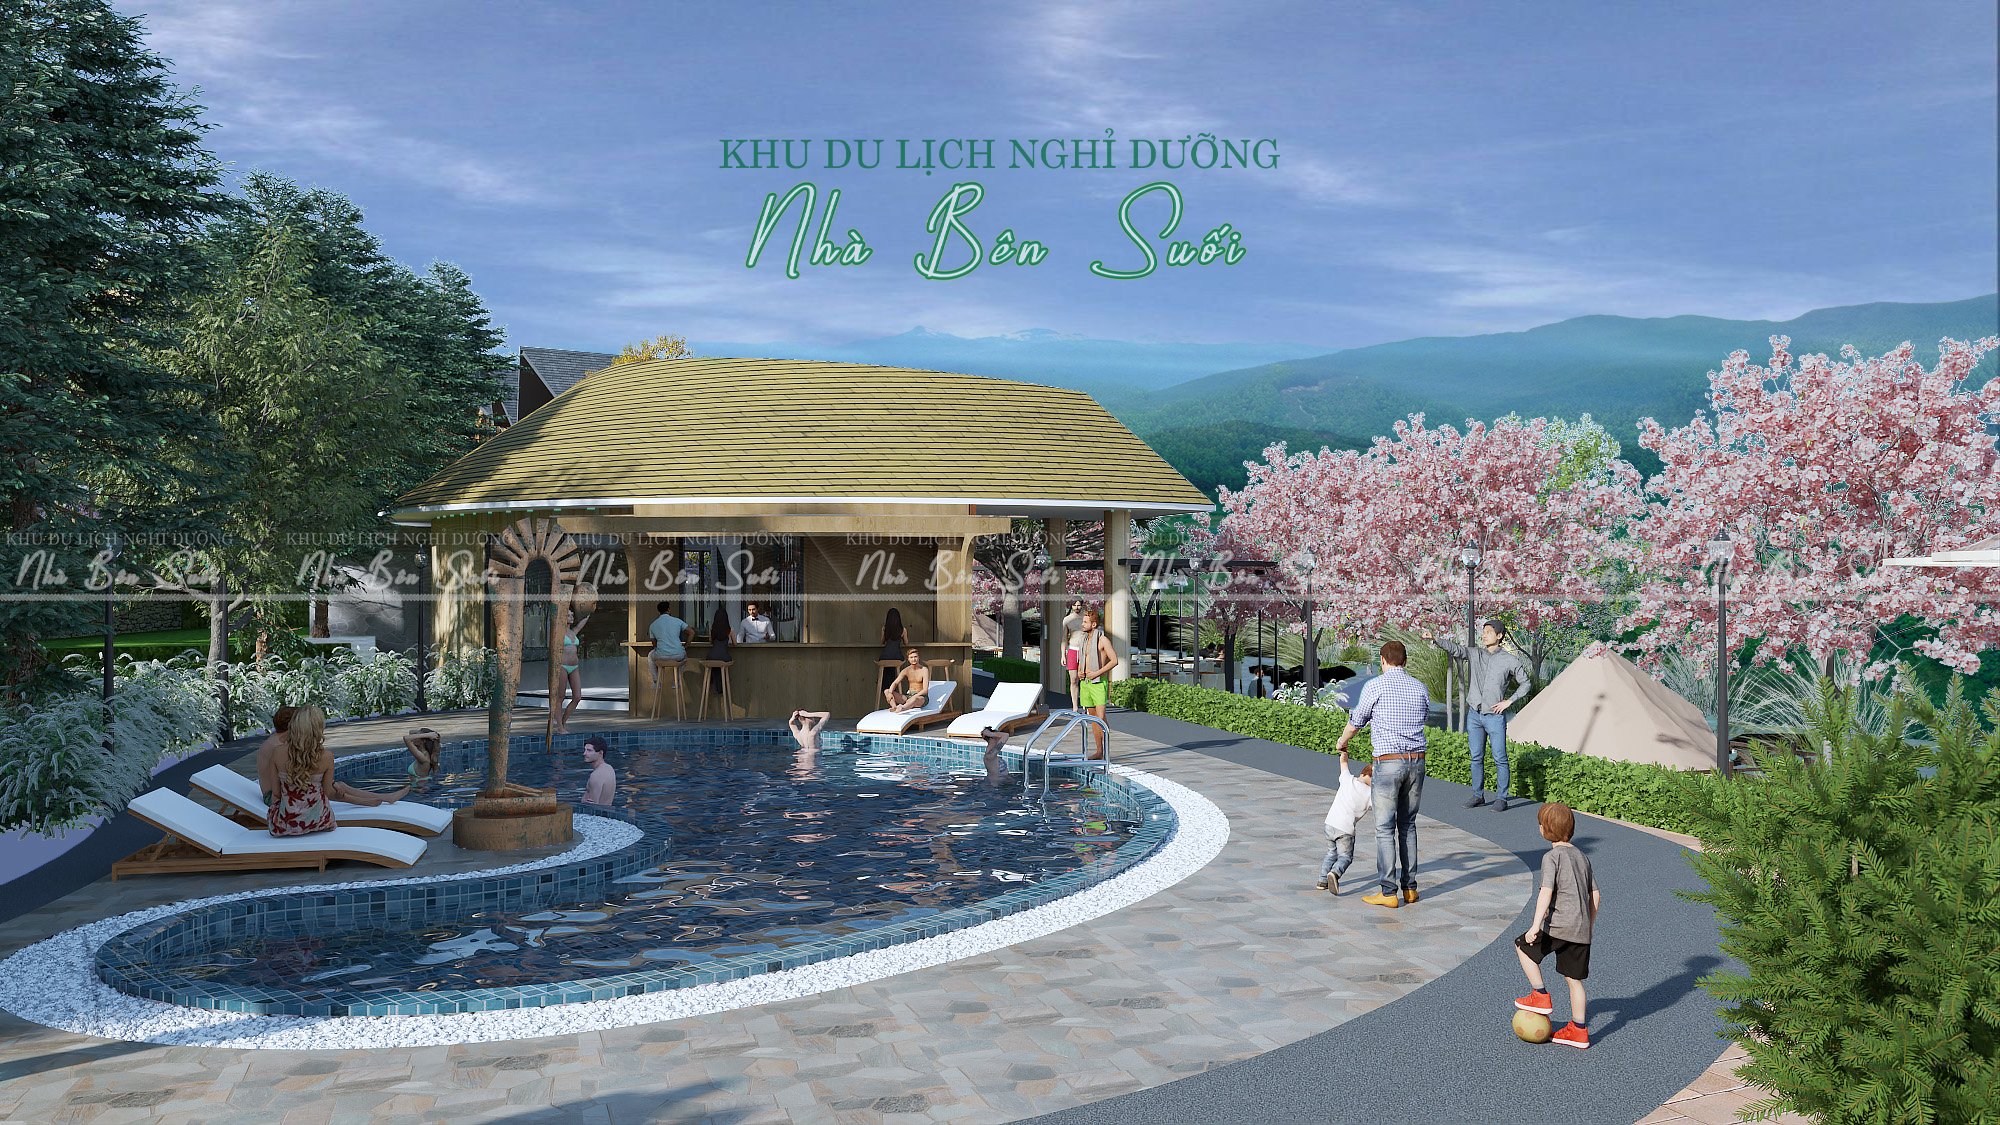 Bán đất nhà bên suối-Bảo Lâm, có thổ cư, sổ sẵn, gần UBND, có hồ bơi nước ấm, 2/9 cao tốc khởi công 3